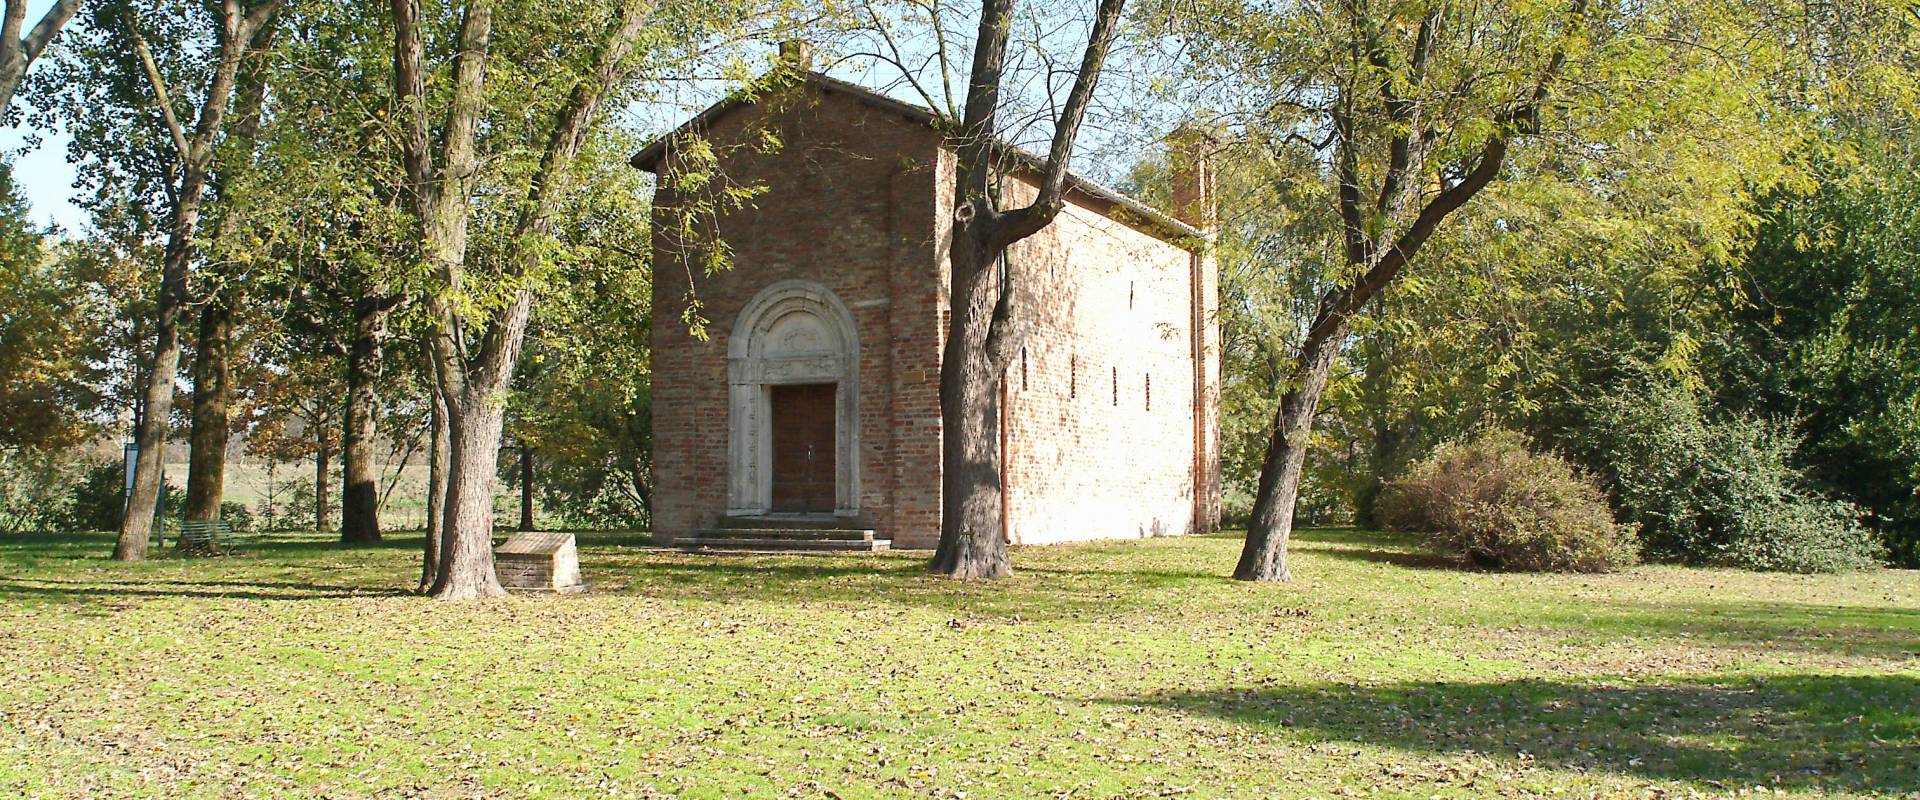 Pieve di san Giorgio photo by Baraldi